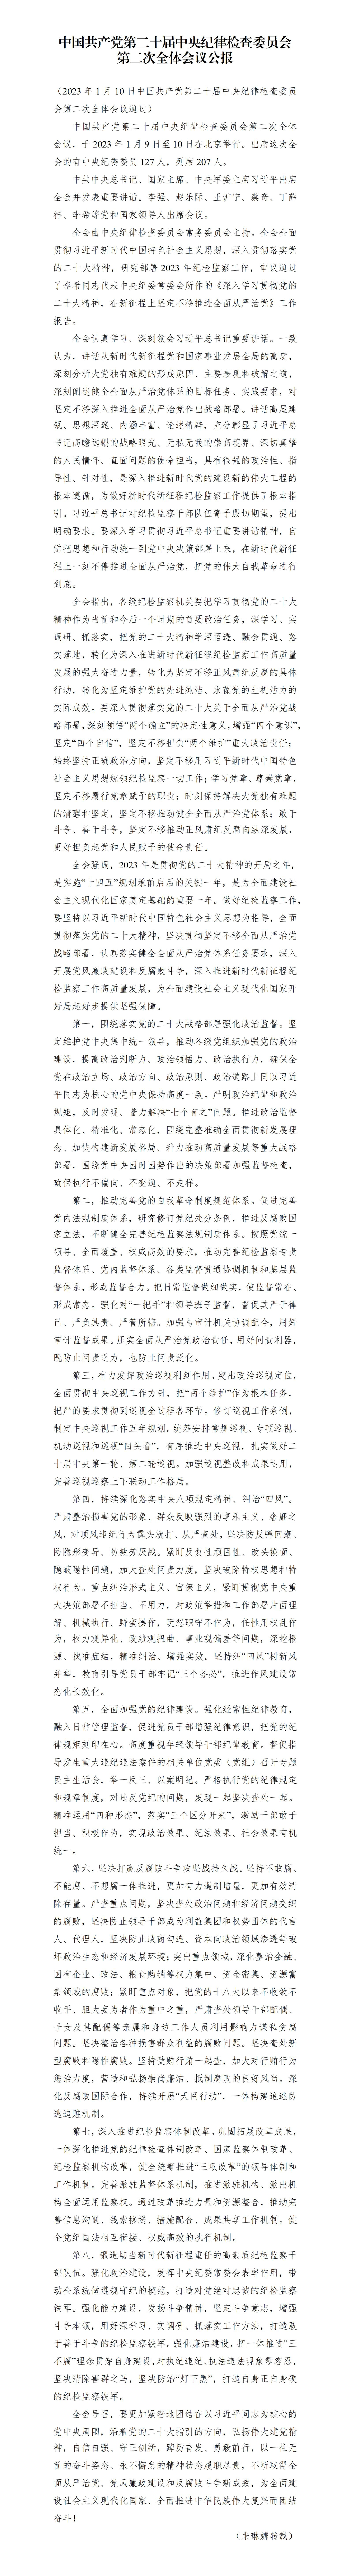 中国共产党第二十届中央纪律检查委员会第二次全体会议公报_01.jpg